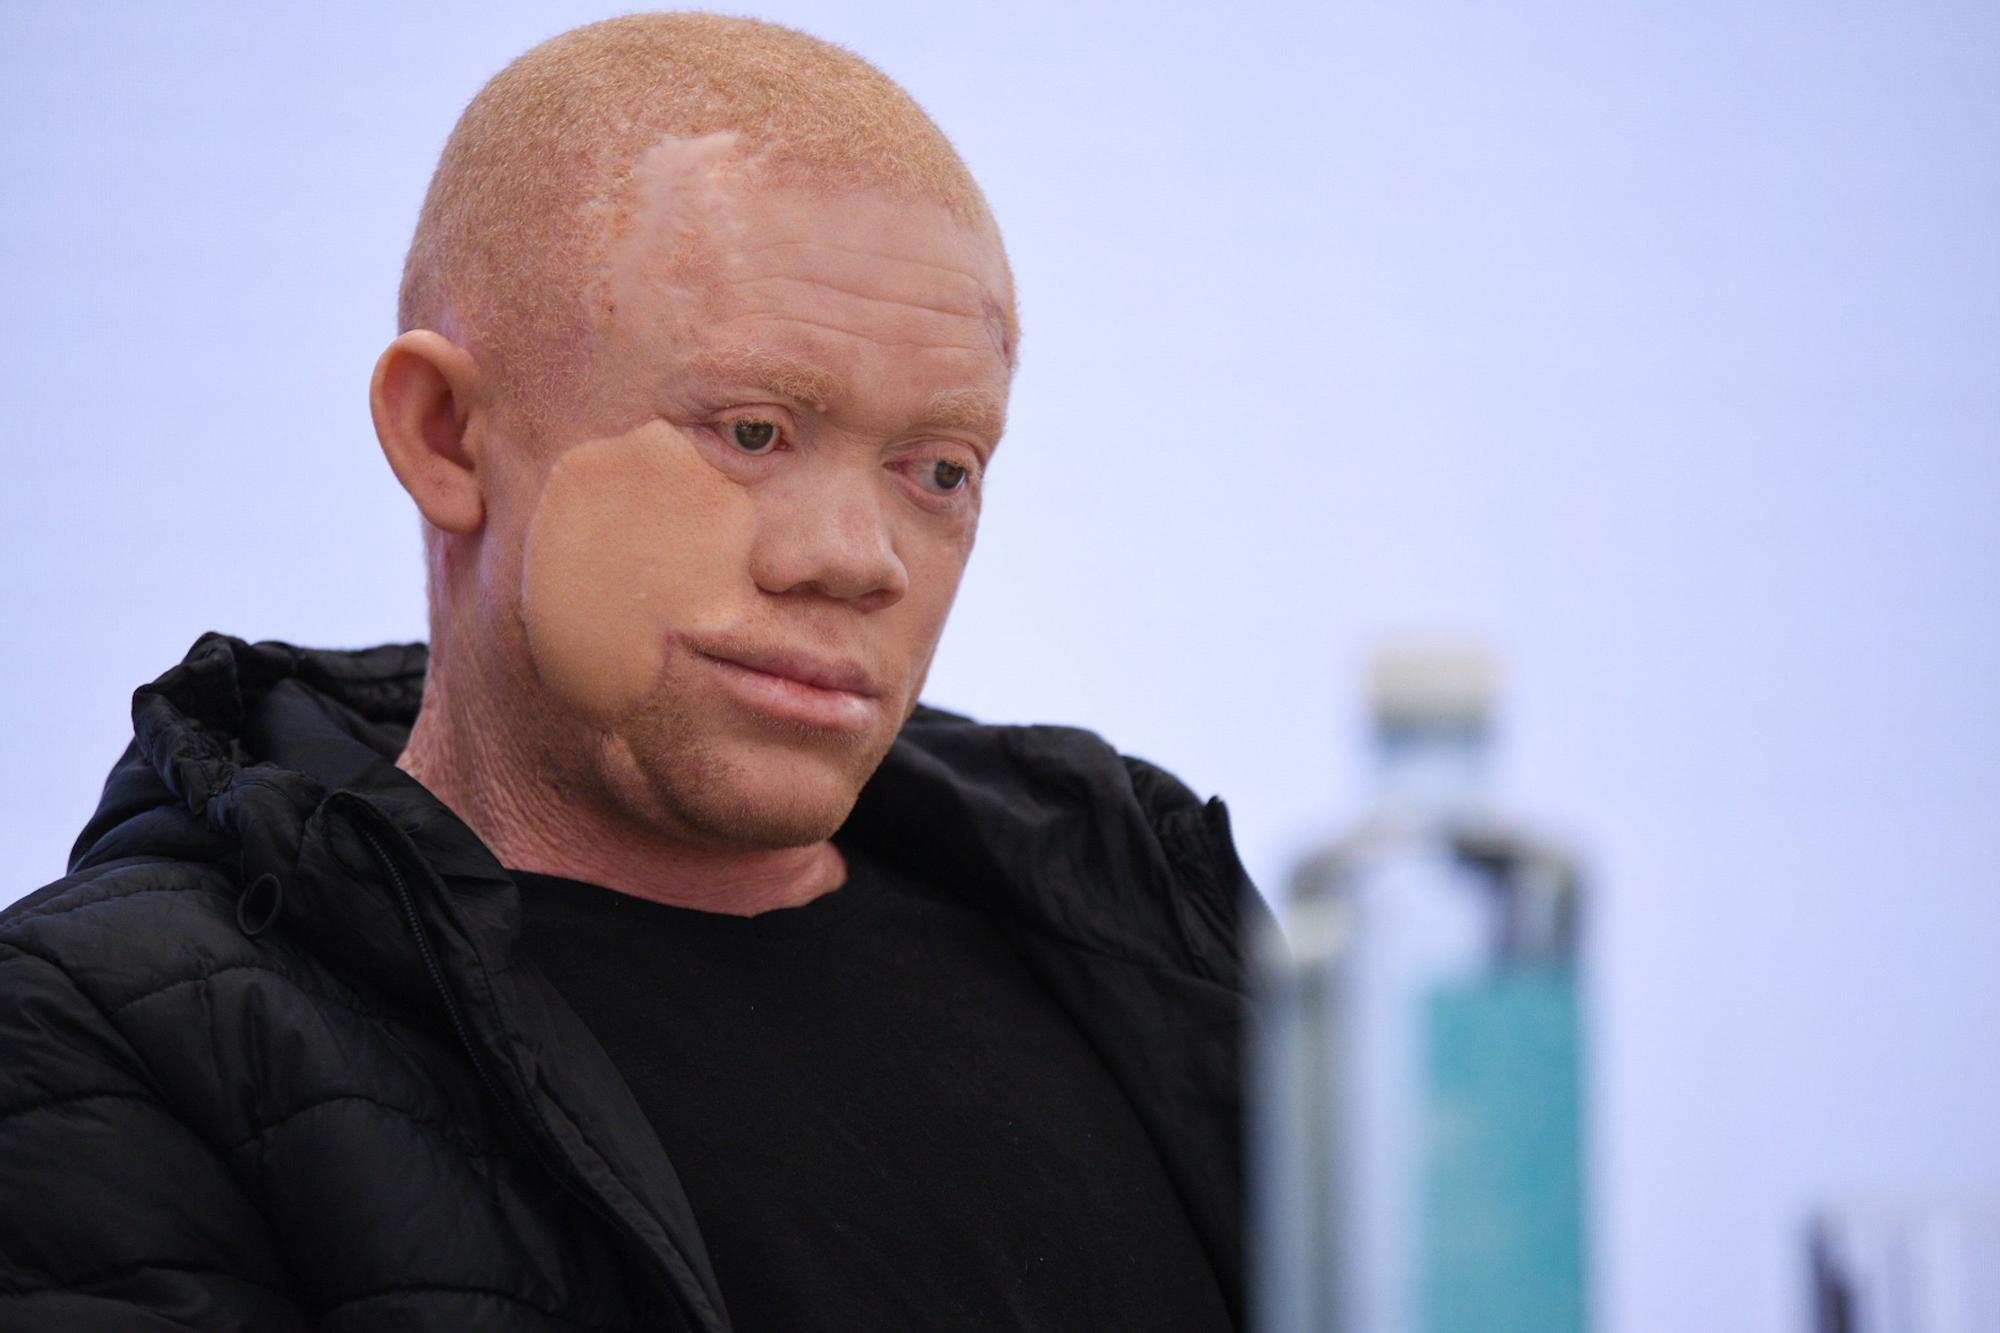 Cavadas reconstruye la cara a un paciente albino